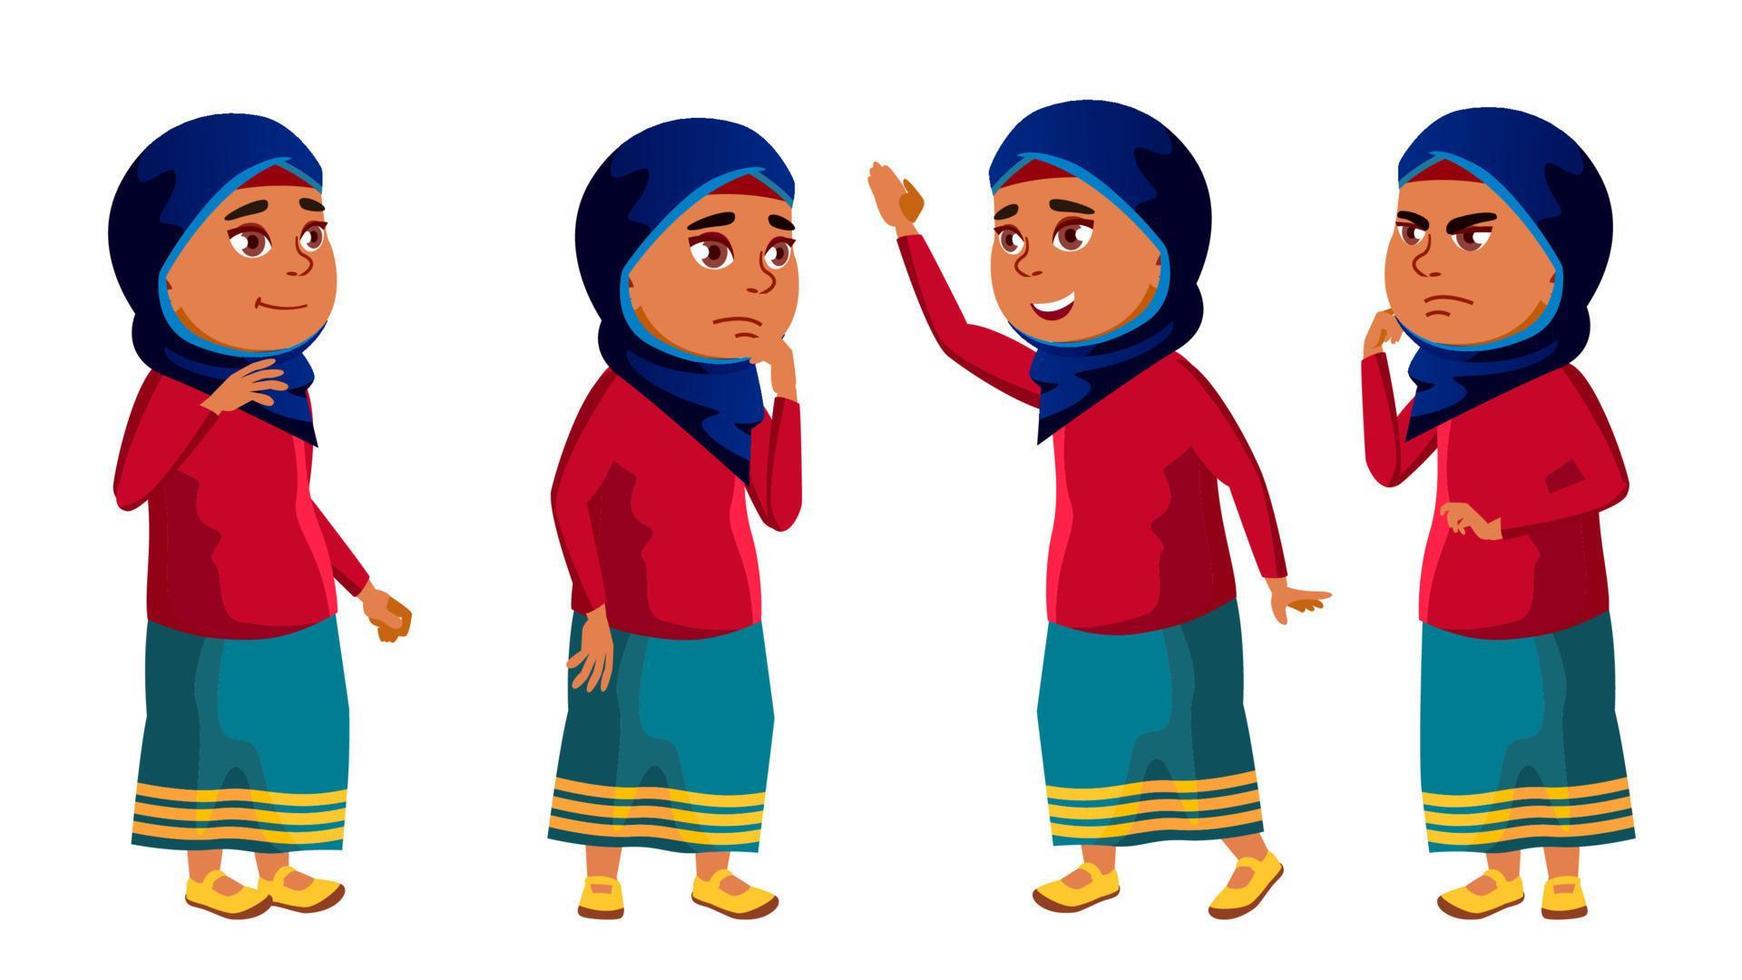 árabe, niña musulmana poses set vector. niño de secundaria. educación. joven, lindo, cómico. para tarjeta, publicidad, diseño de saludo. ilustración de dibujos animados aislados vector